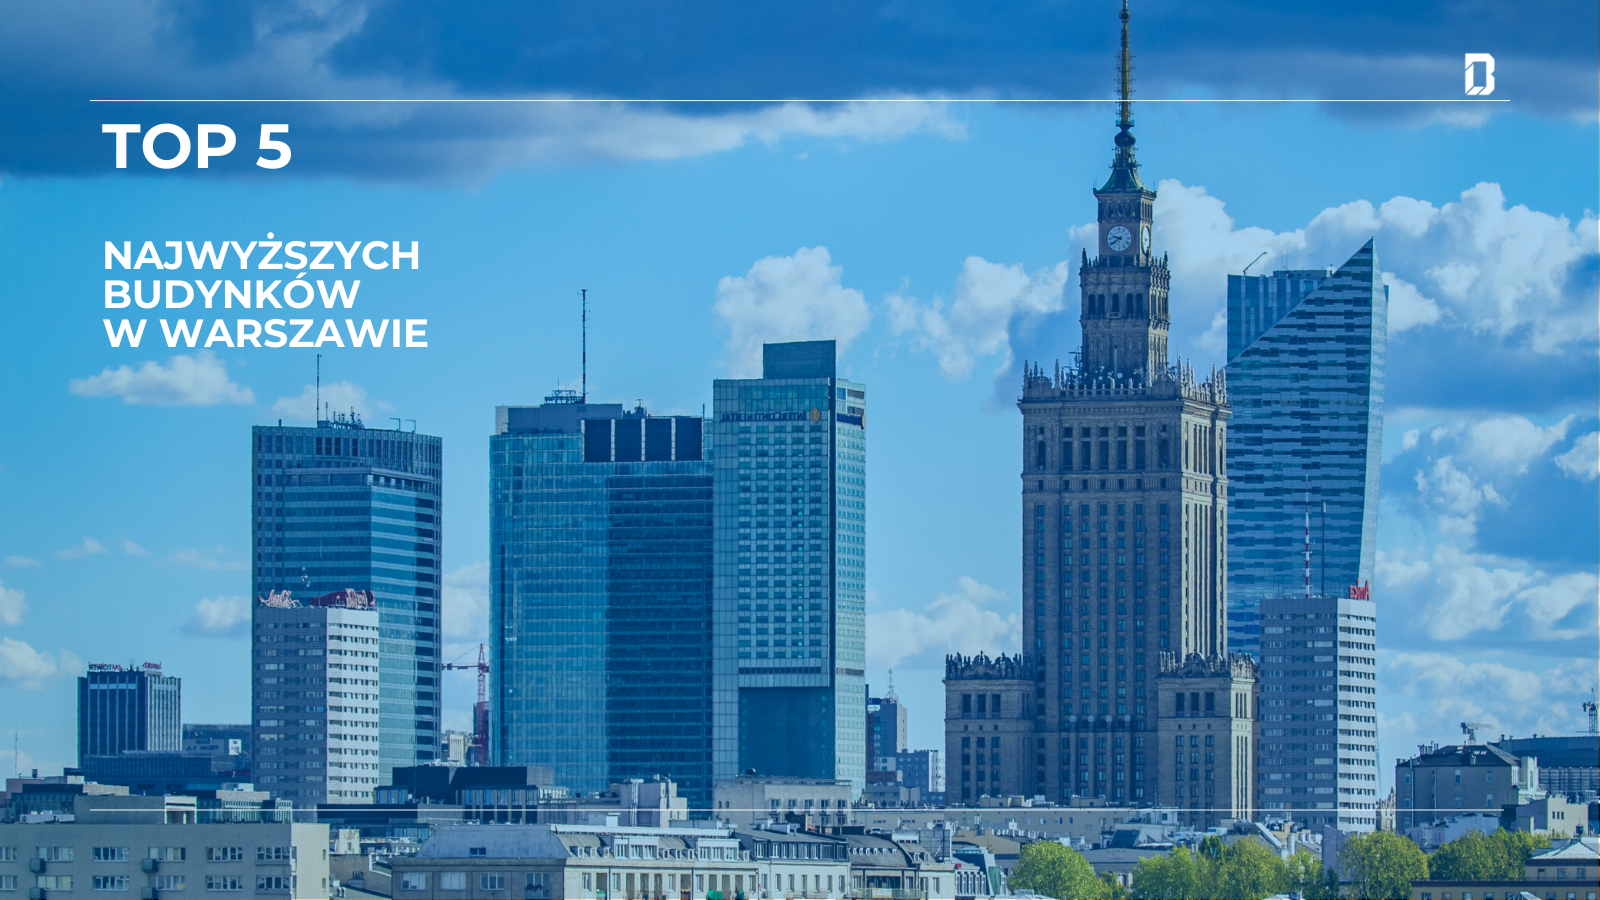 TOP 5 budynki biurowe w Warszawie